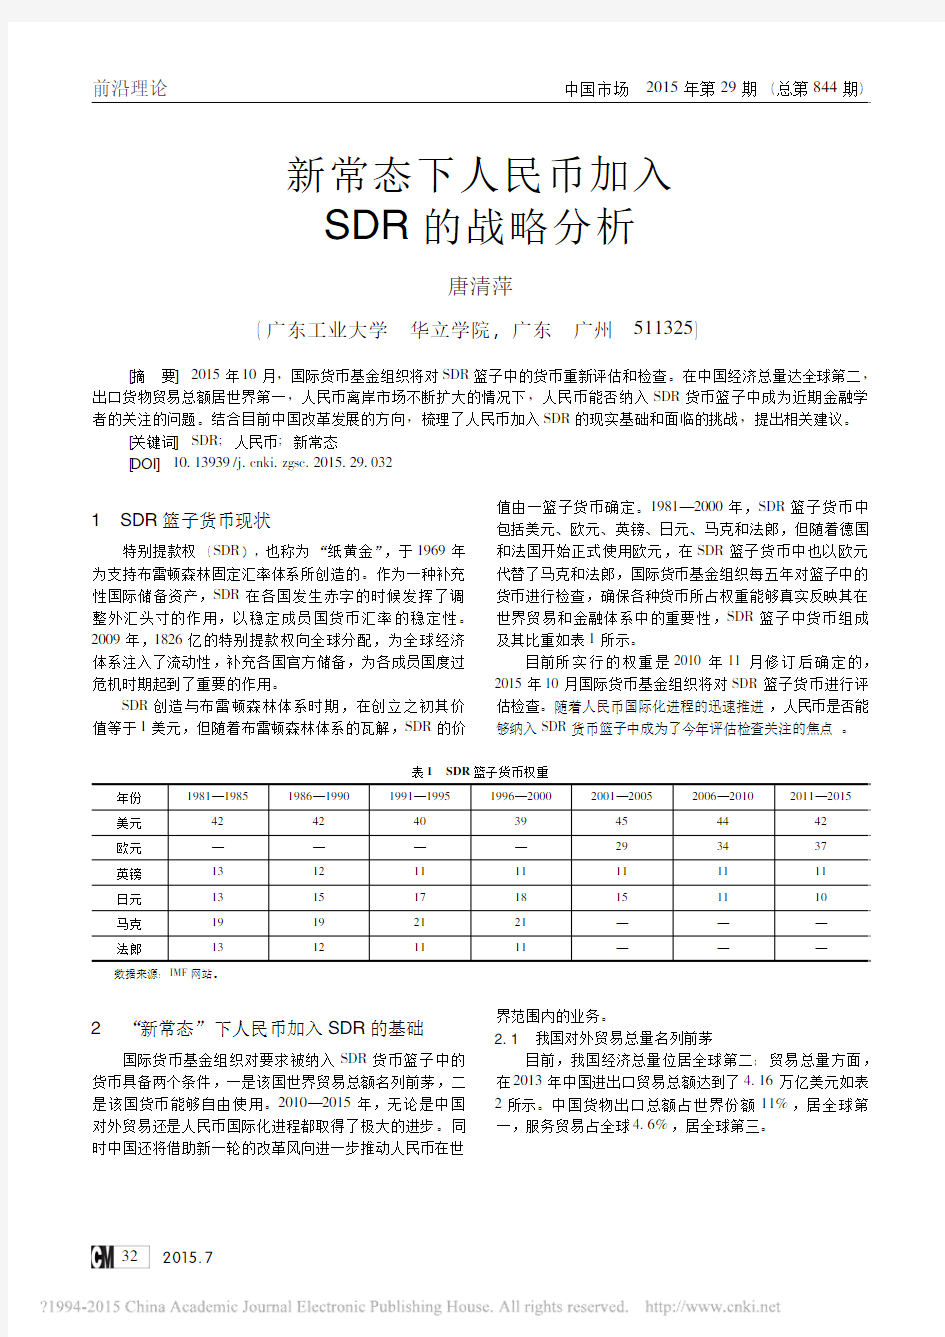 新常态下人民币加入SDR的战略分析_唐清萍